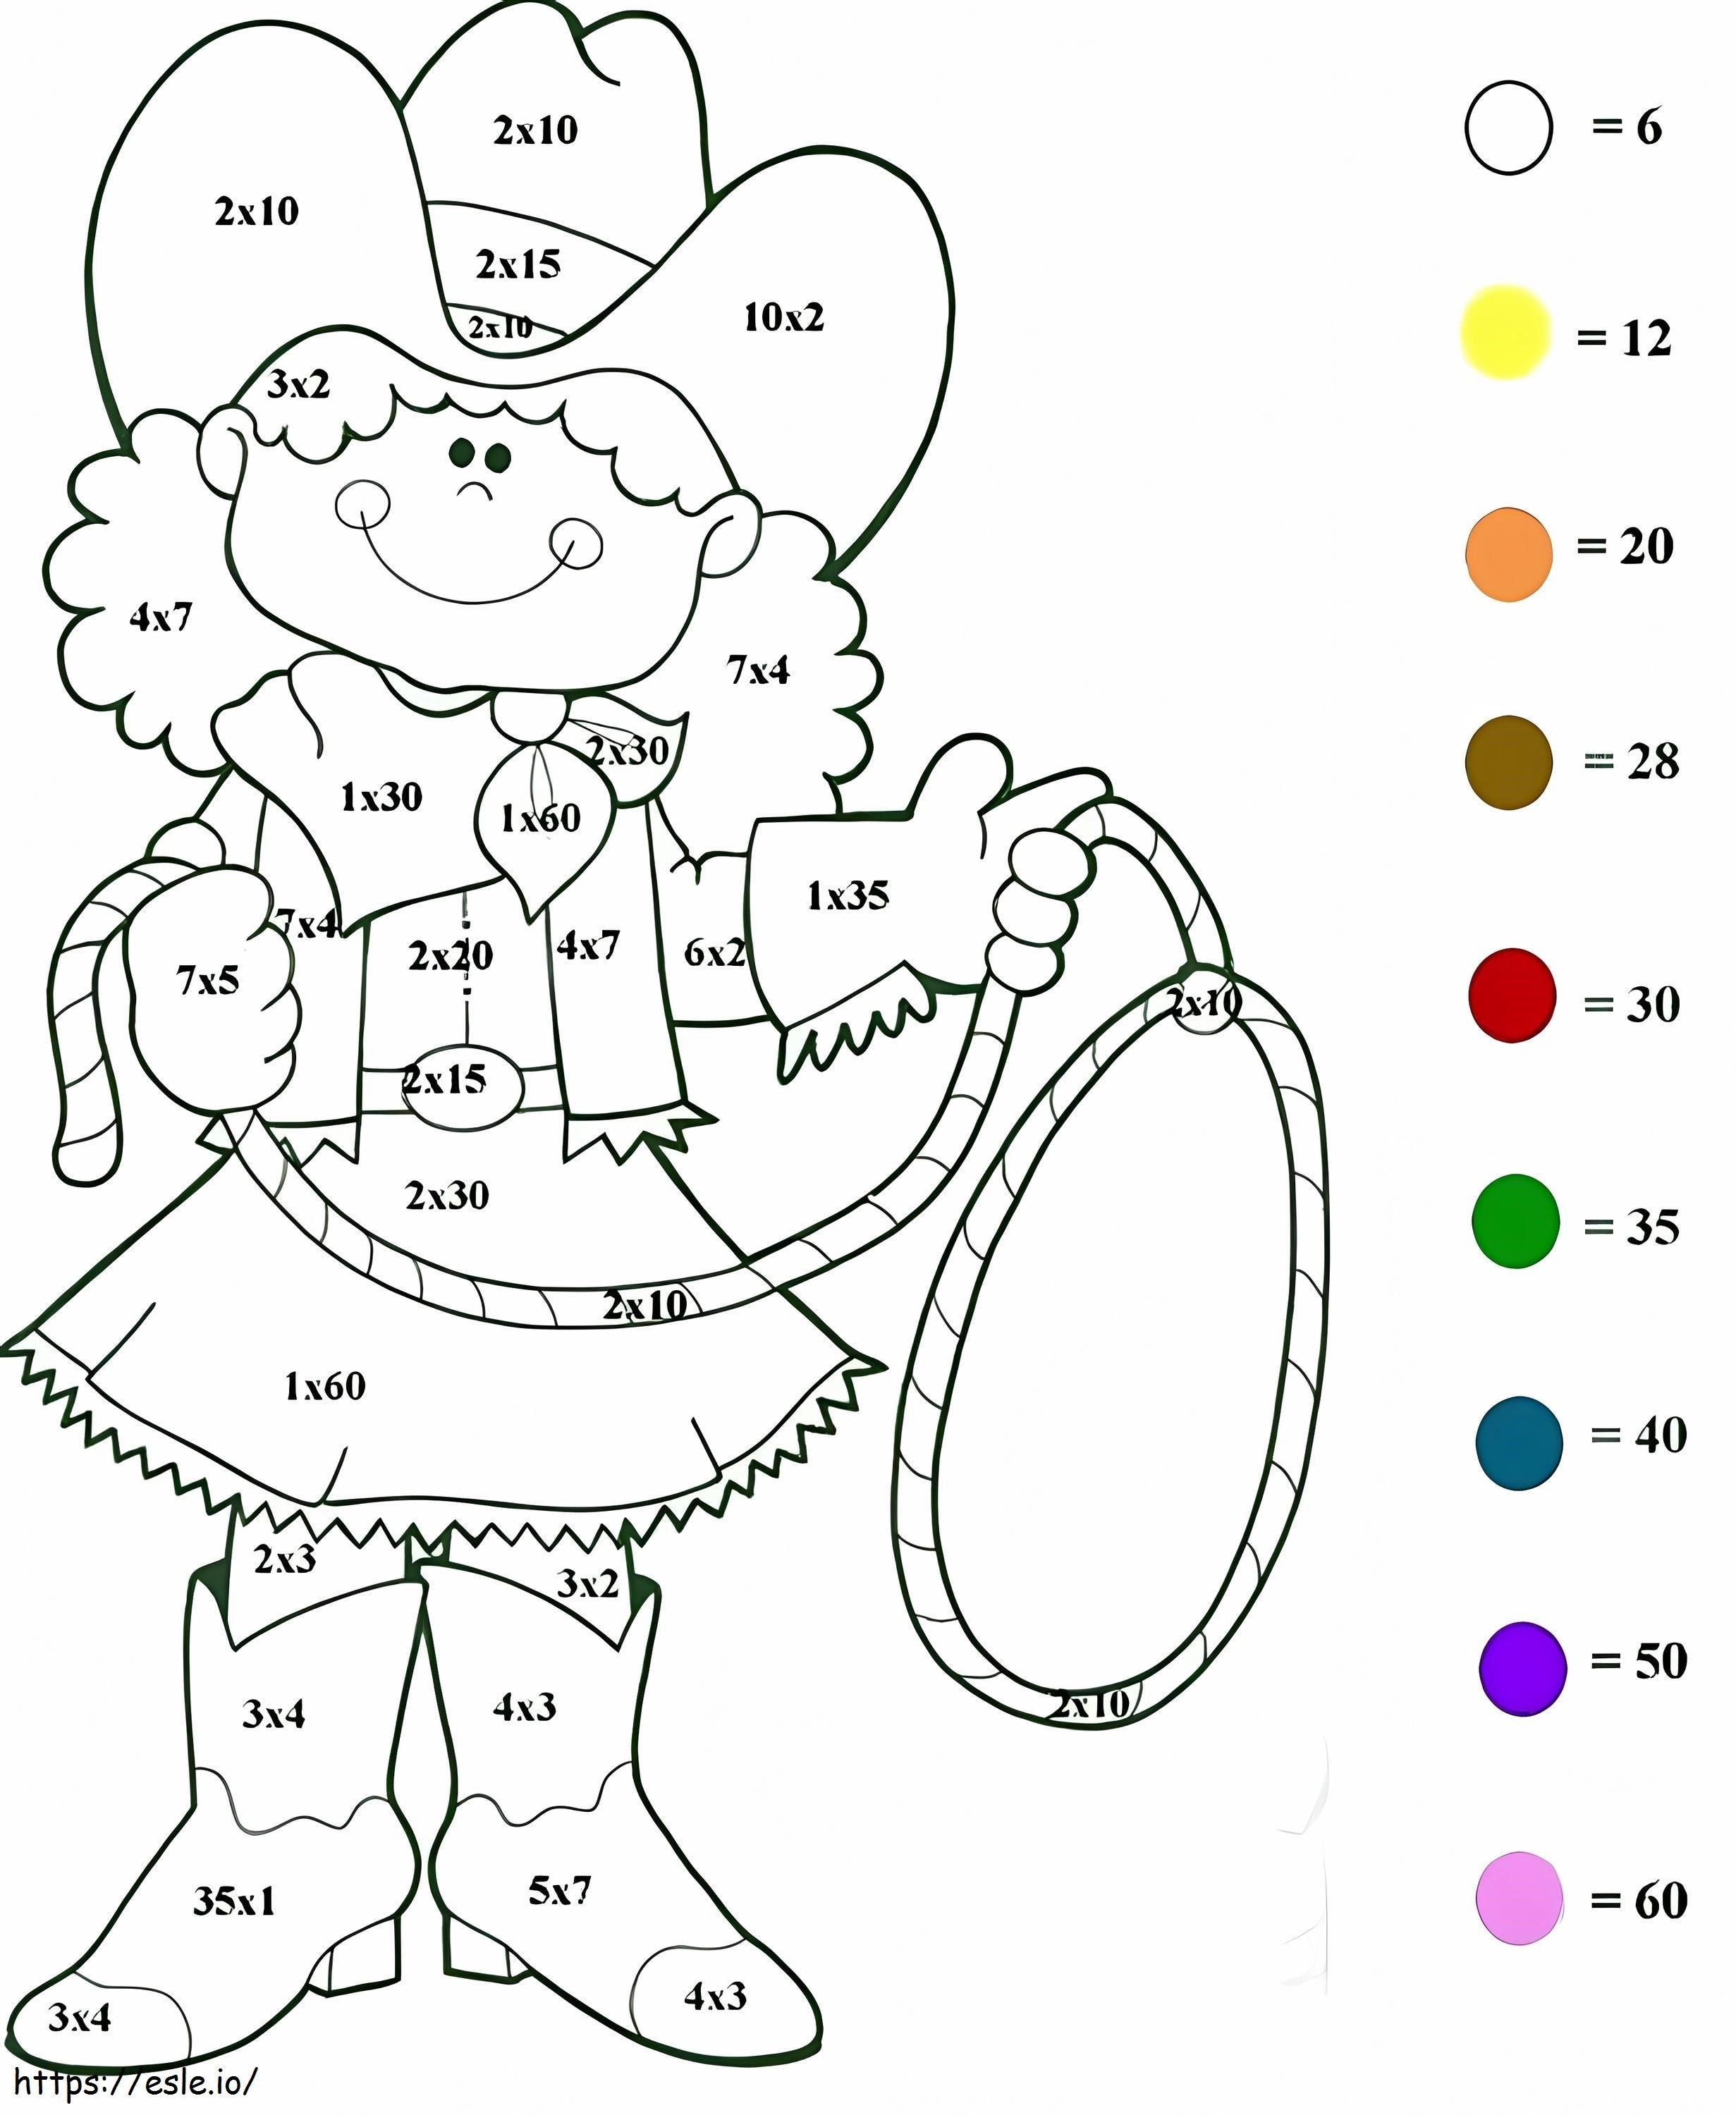 Kolorowanie według liczb według kowbojek kolorowanka